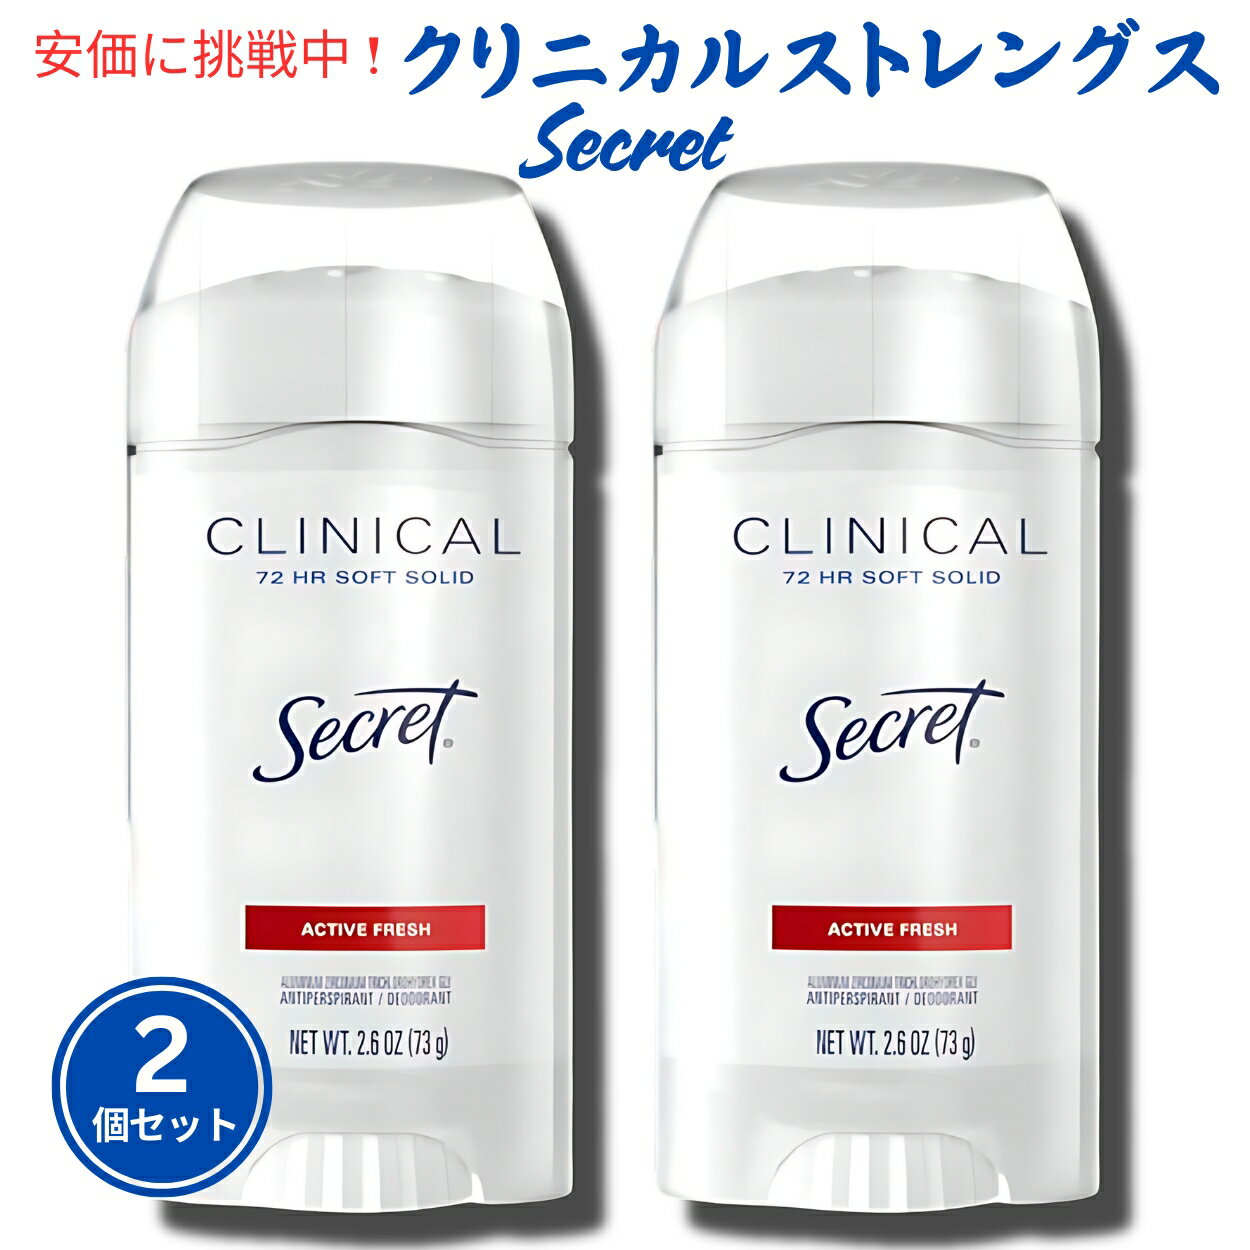 【2個セット】Secret シークレット クリニカルストレングス デオドラント [アクティブフレッシュ] 73g Soft Solid Deodorant Active Fresh 2.6oz